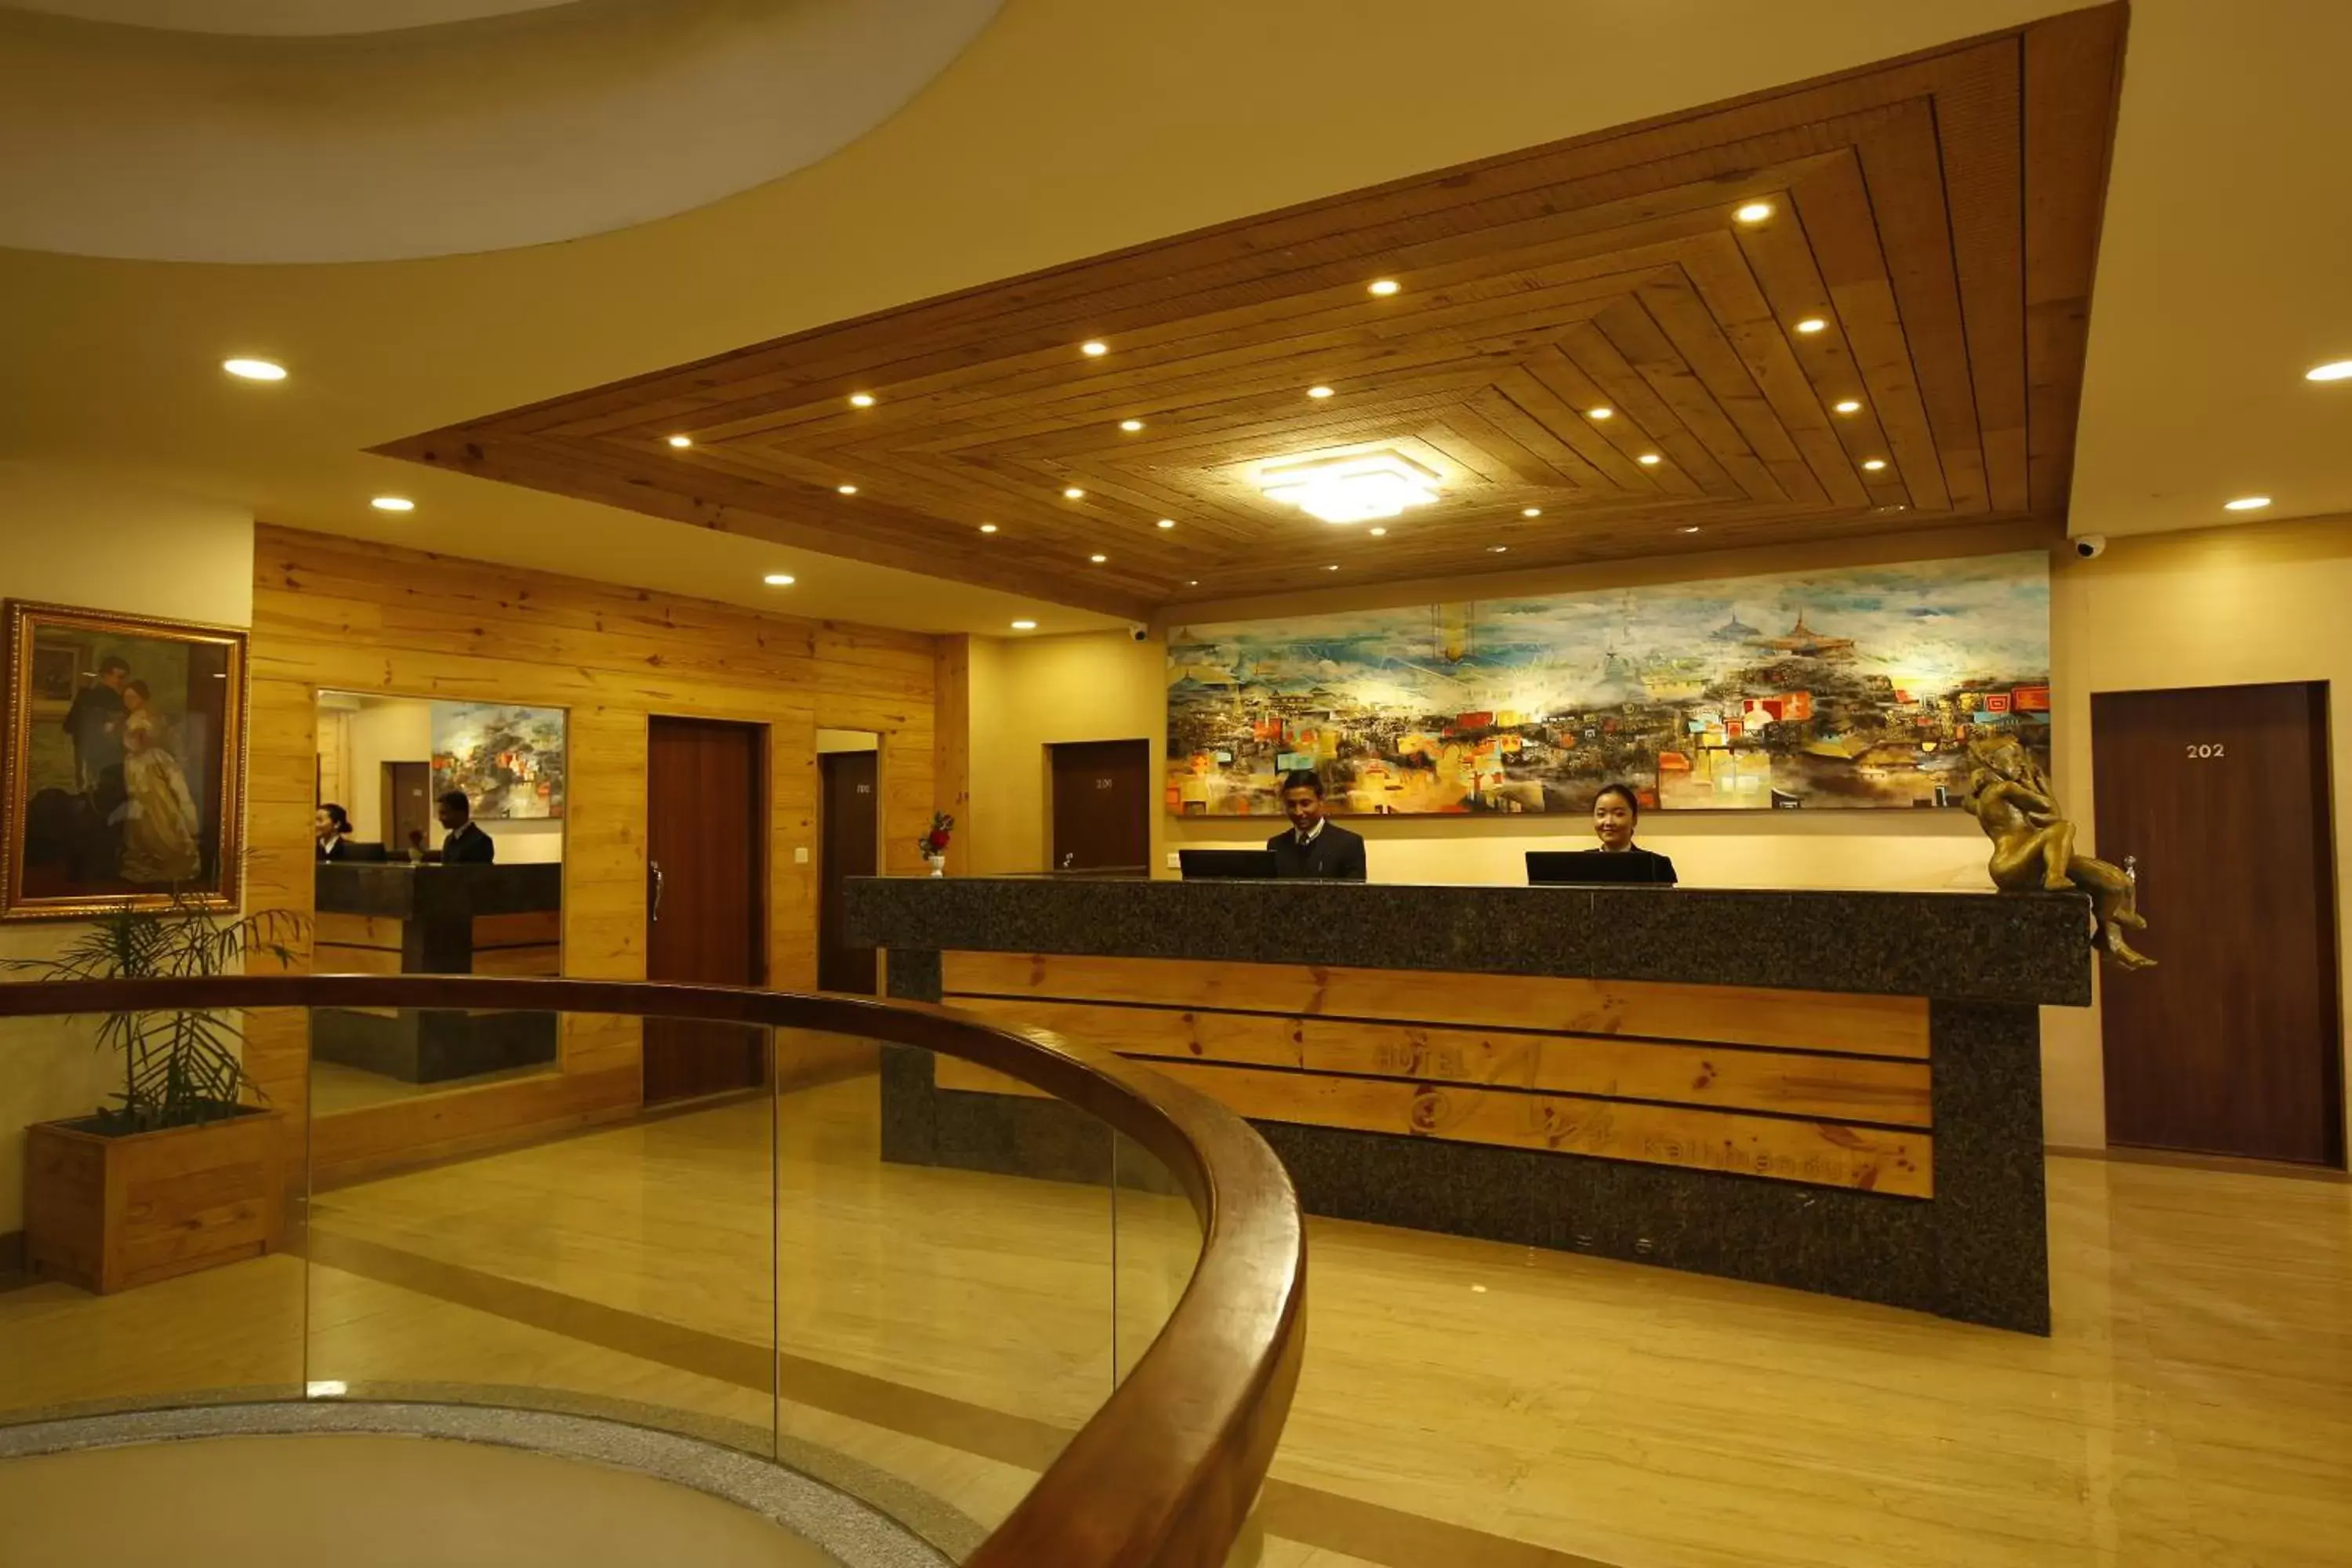 Lobby or reception, Lobby/Reception in Hotel Arts Kathmandu